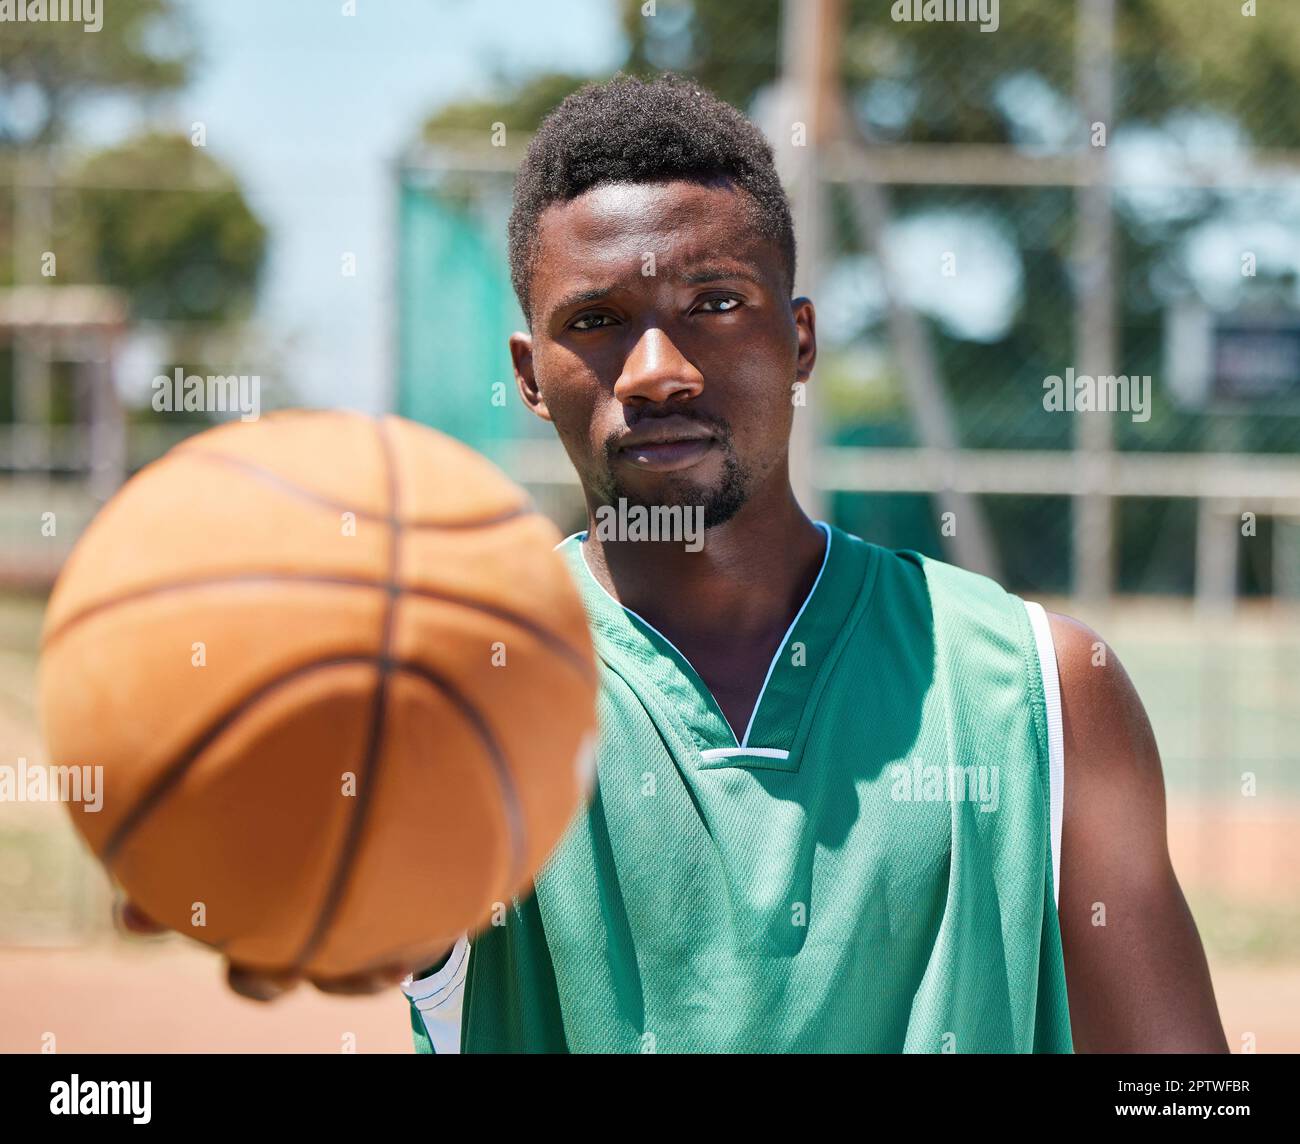 Basketball, Sight Face und Black man sind bereit für Fitness, Training und  Sportspiele im Freien. Porträt eines Athleten vor dem Training, Wellness  und Körper h Stockfotografie - Alamy